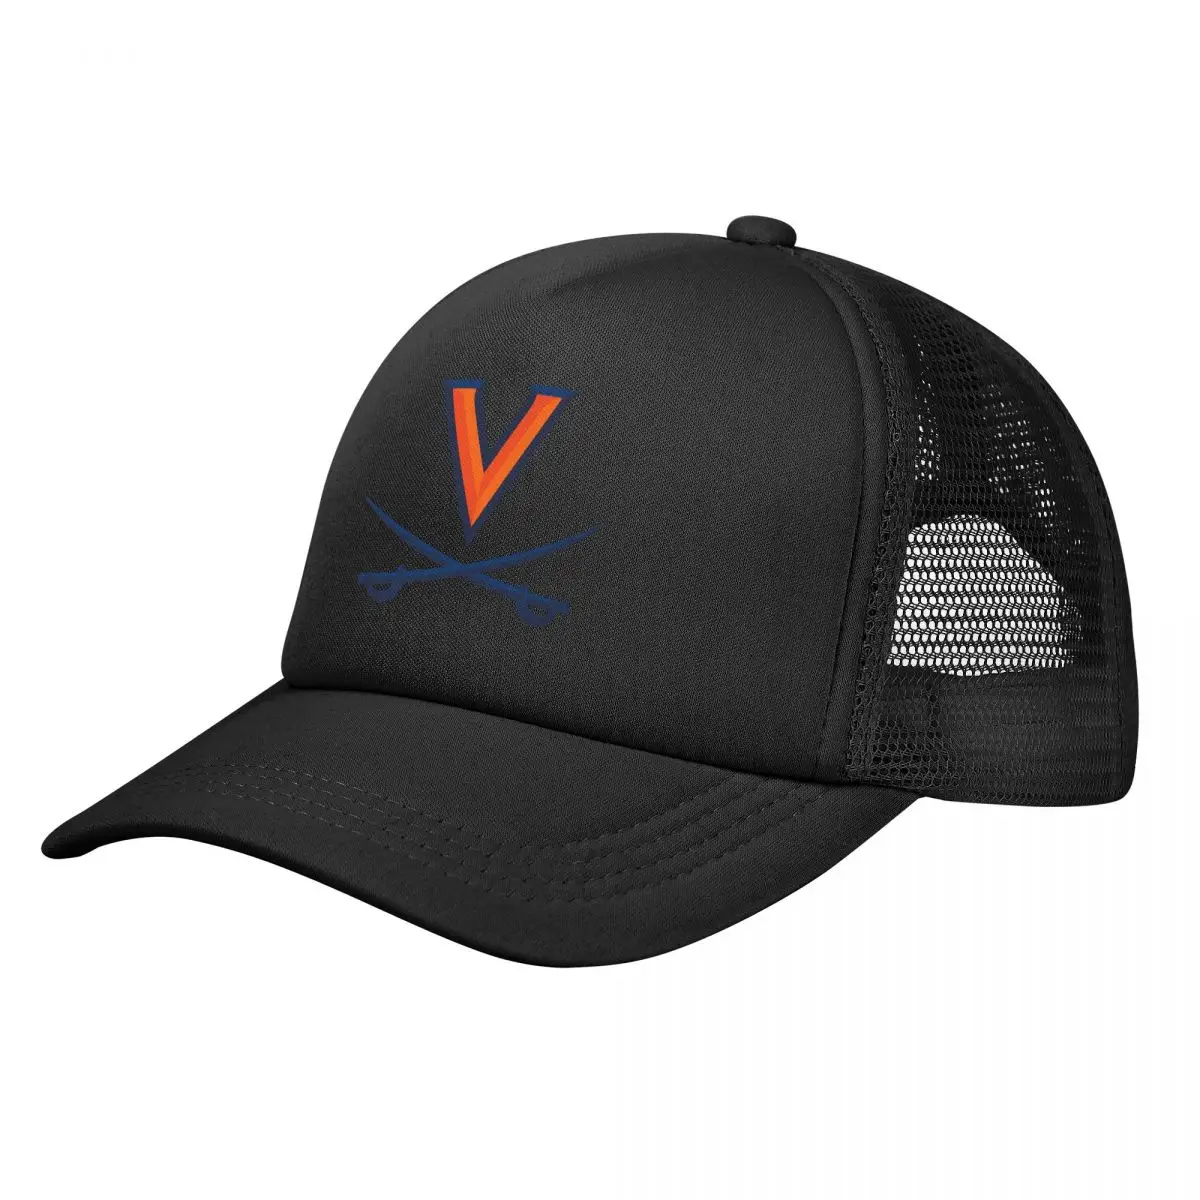 

Бейсболка с логотипом Virginia Cava-Lier, кепка для бега, головные уборы для гольфа, мужские кепки для пиклебола, шапка для мужчин и женщин, защита от солнца